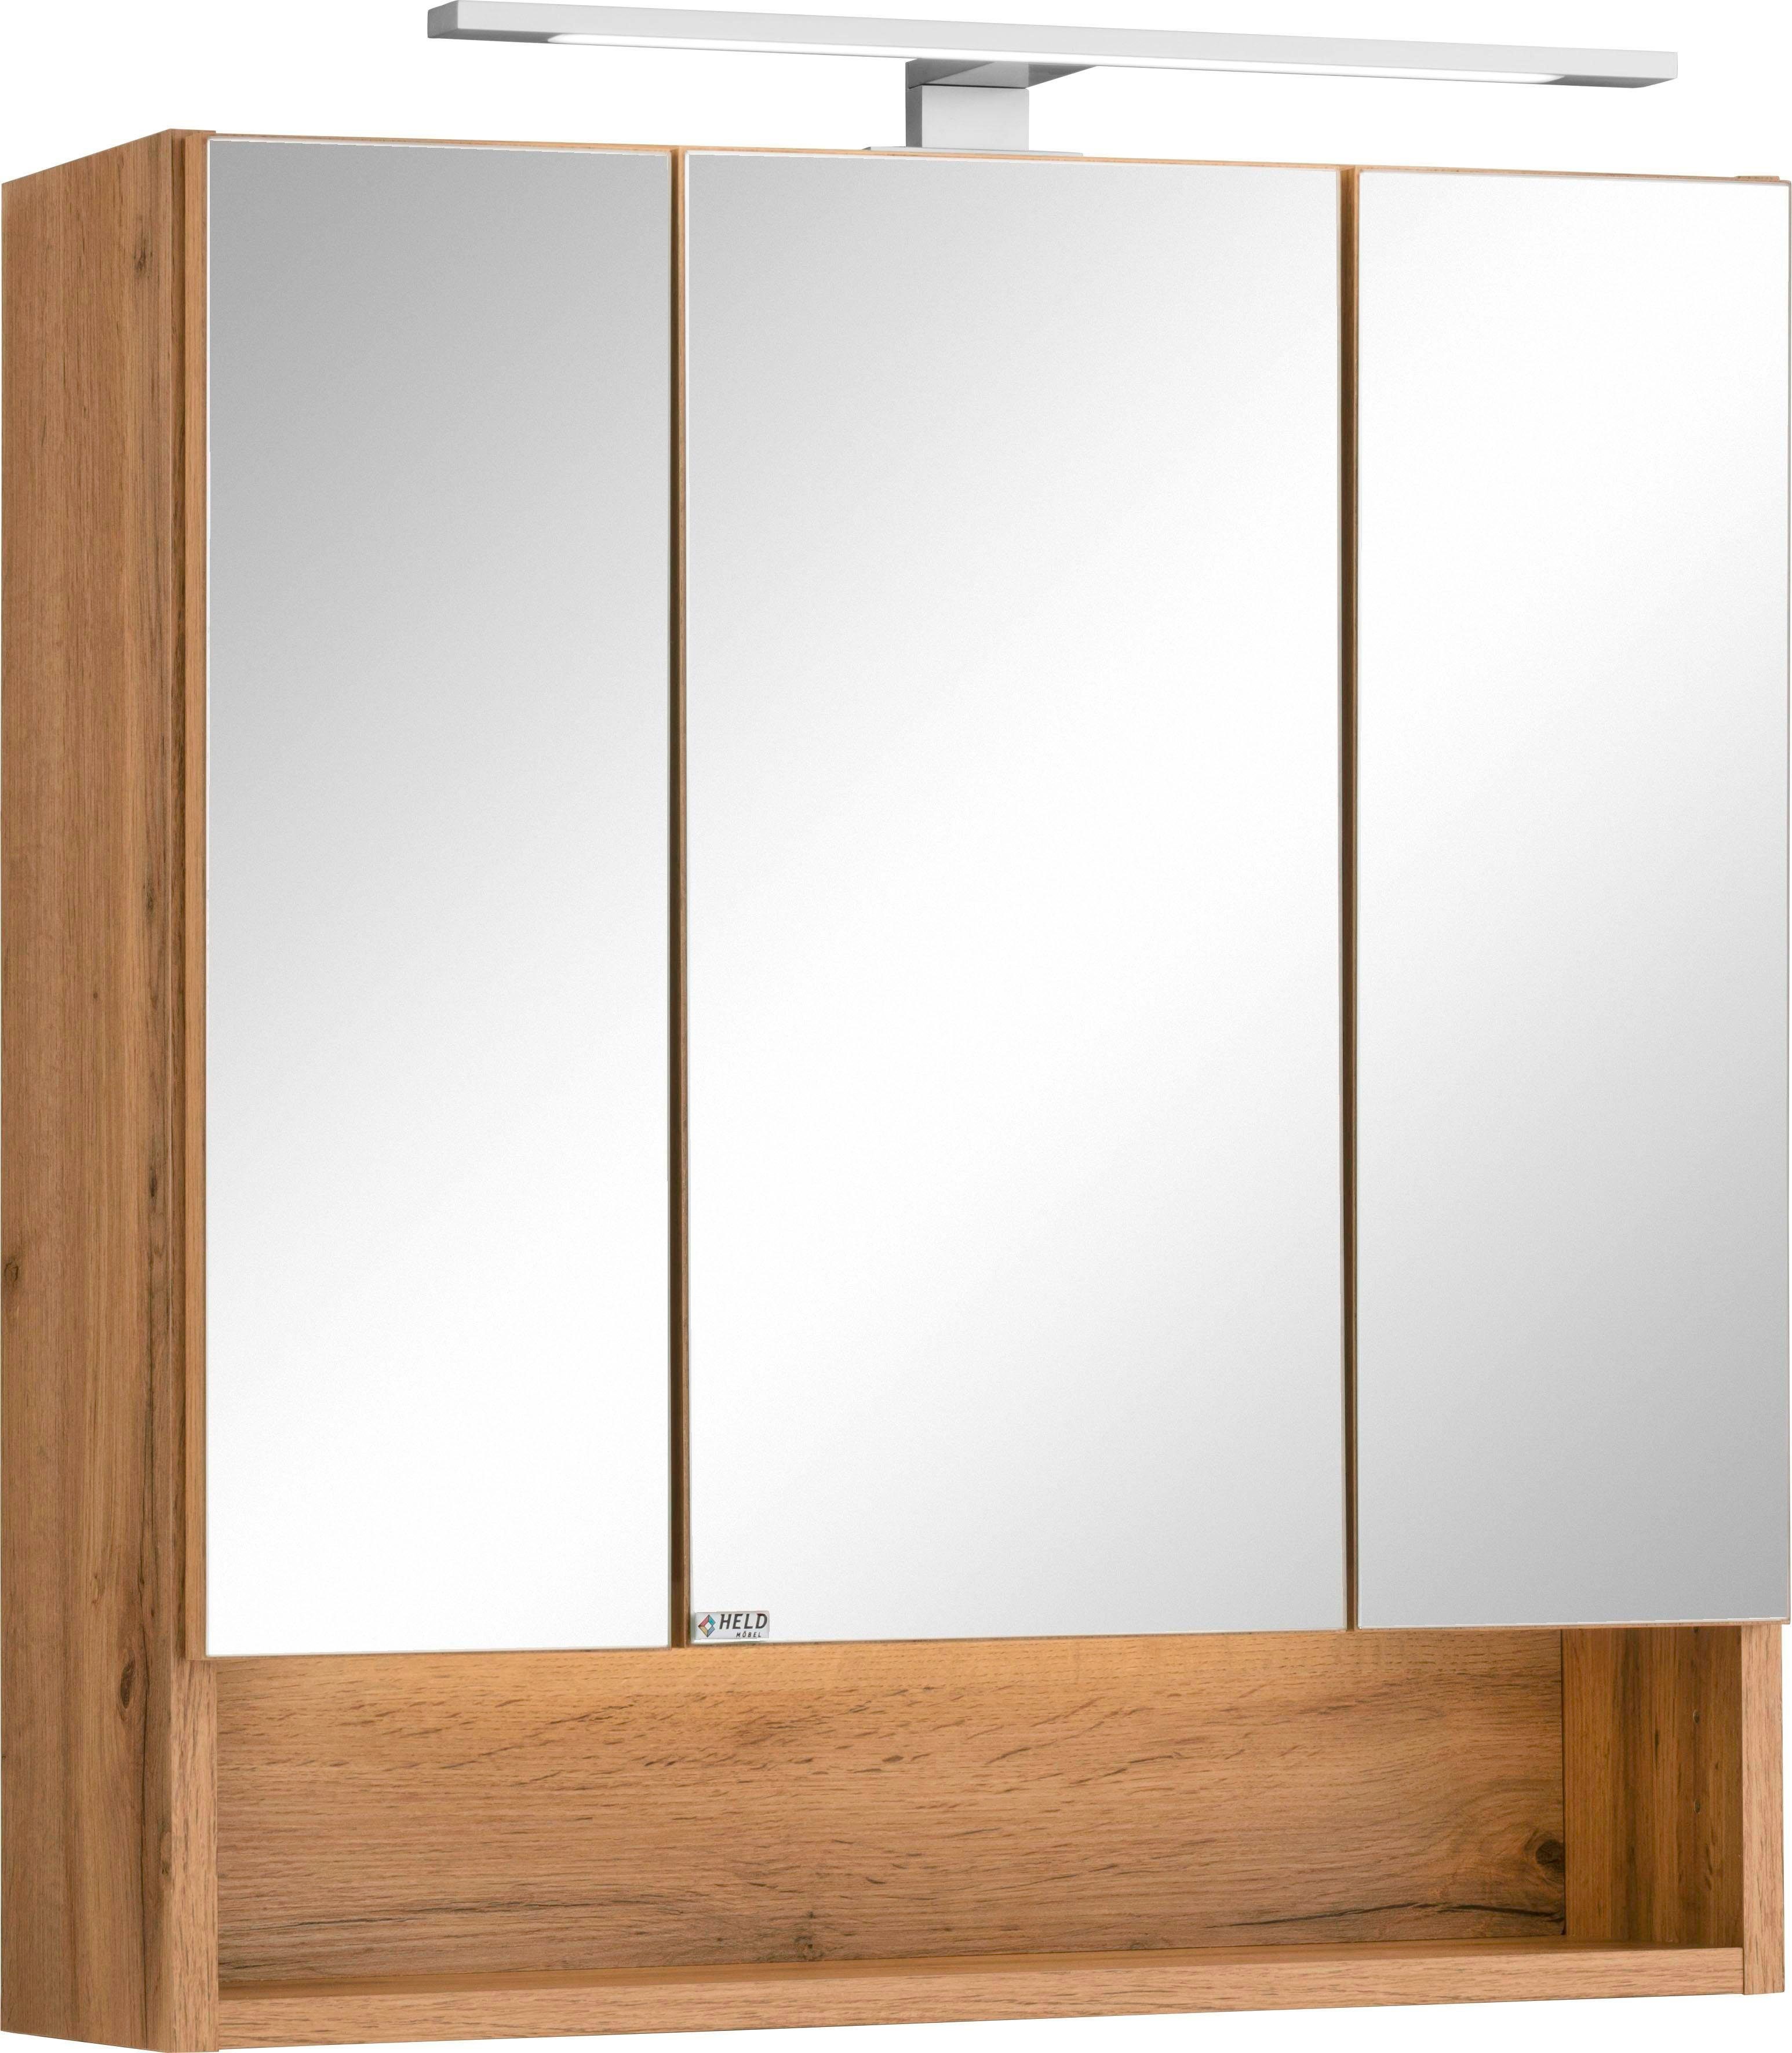 HELD MÖBEL Spiegelschrank Soria mit LED Beleuchtung | Spiegelschränke